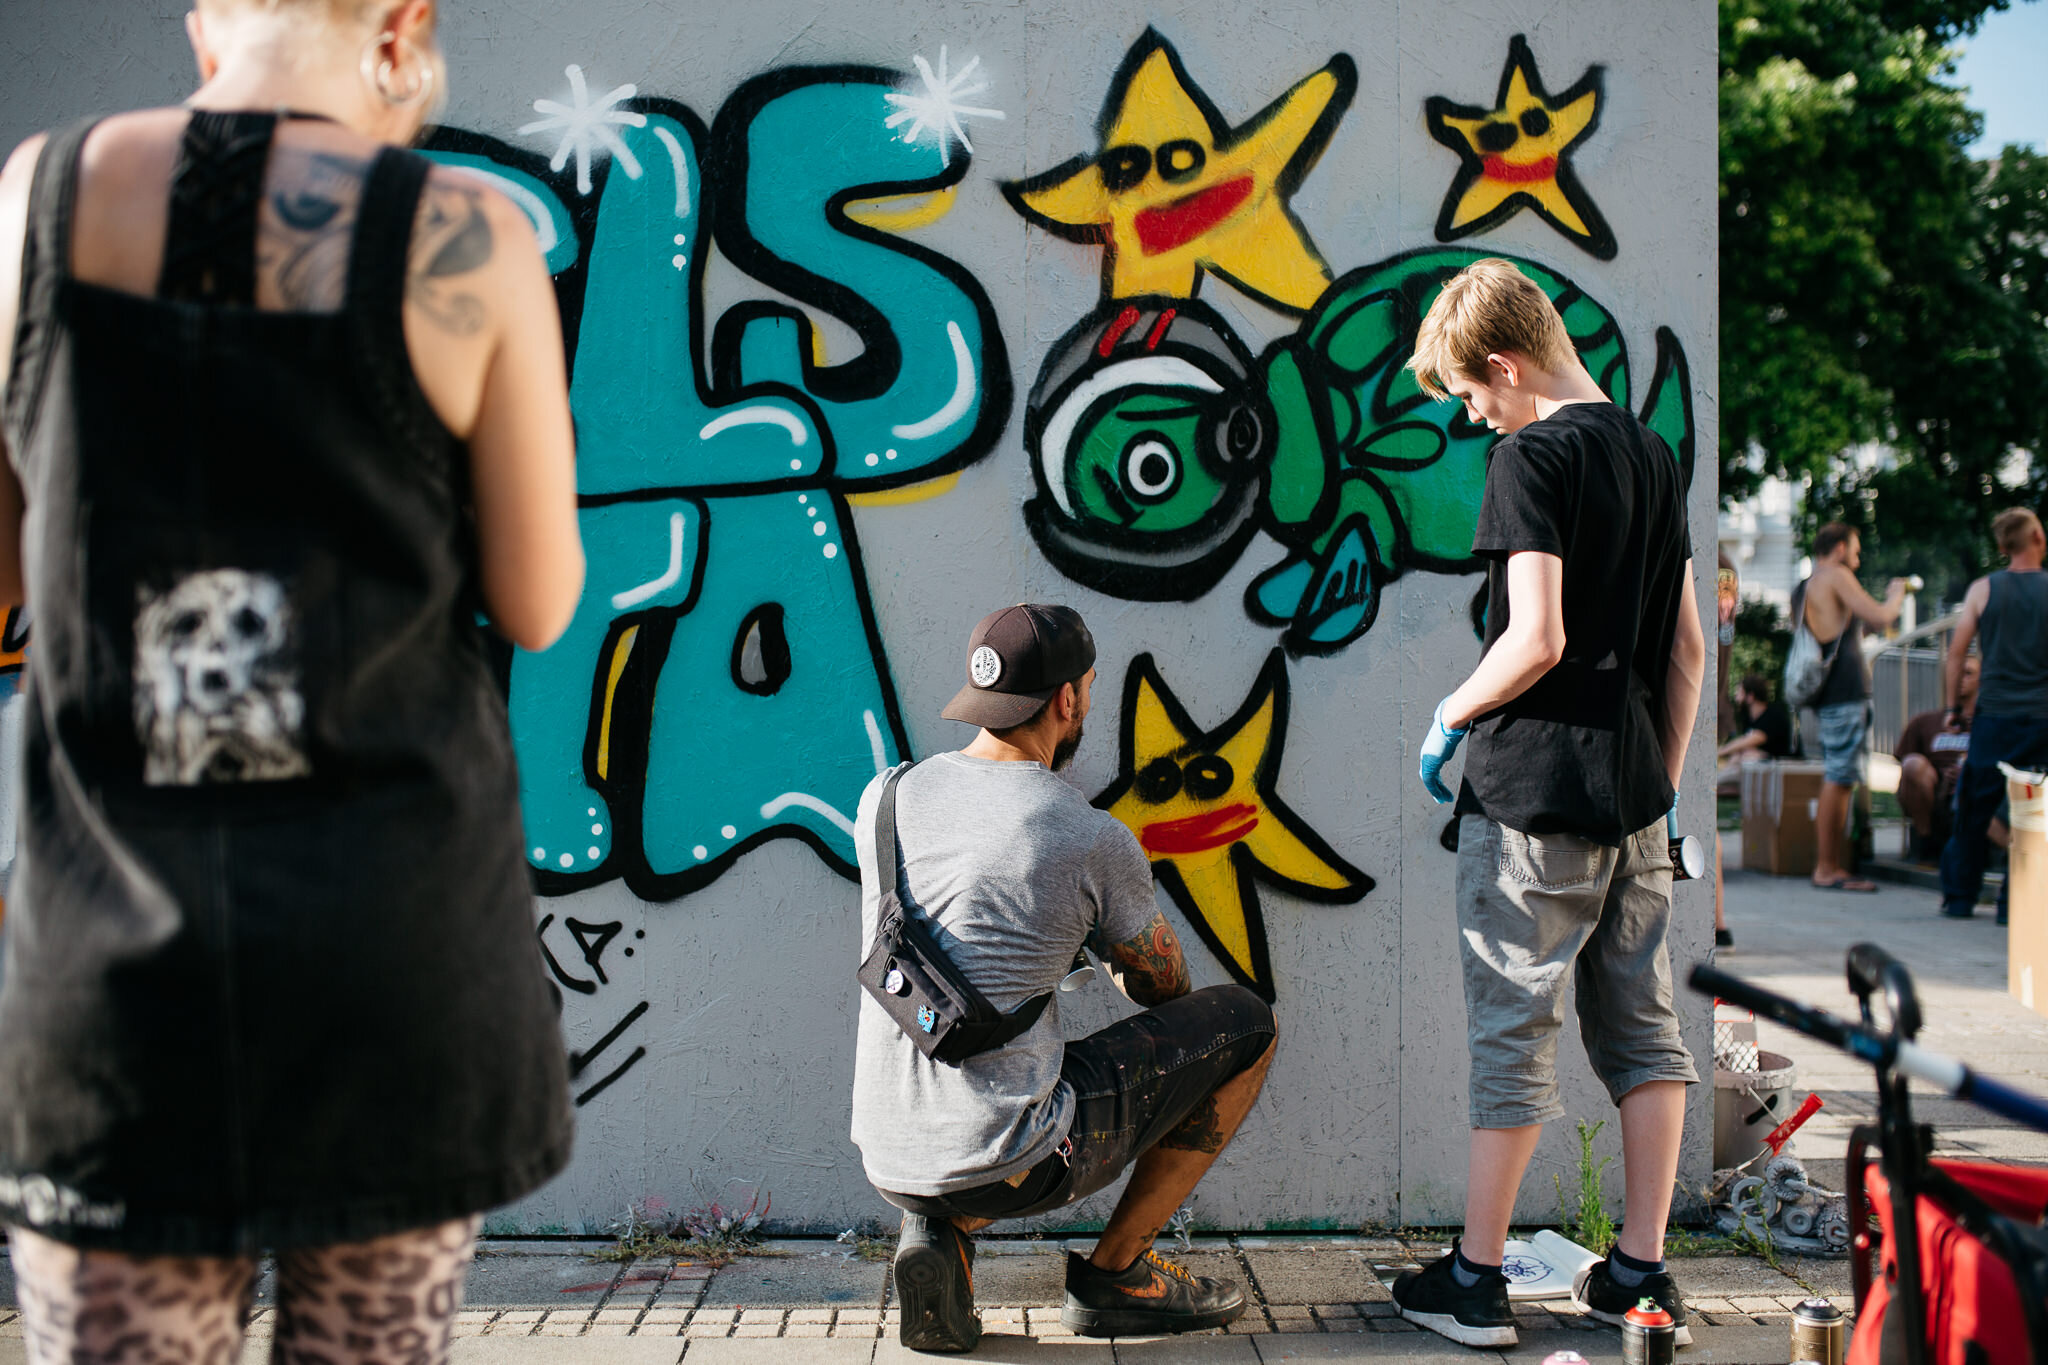 CS_street art workshop_2019-07-19_31_Franziska Liehl.jpg